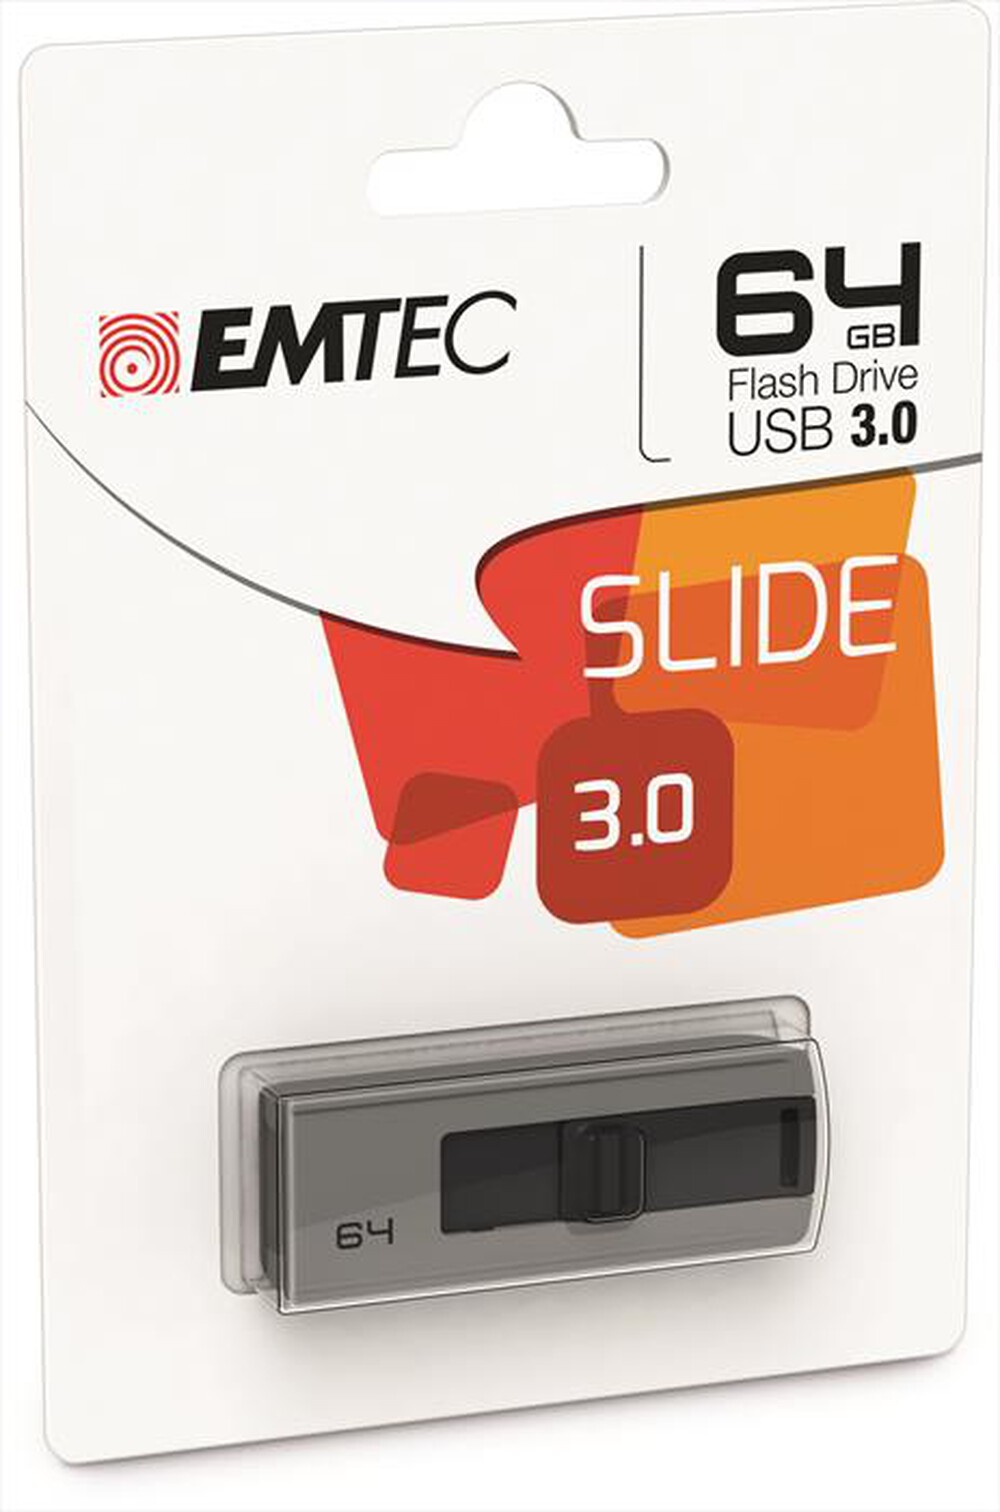 "EMTEC - SLIDE USB 3.0 64GB-GRIGIO/NERO"